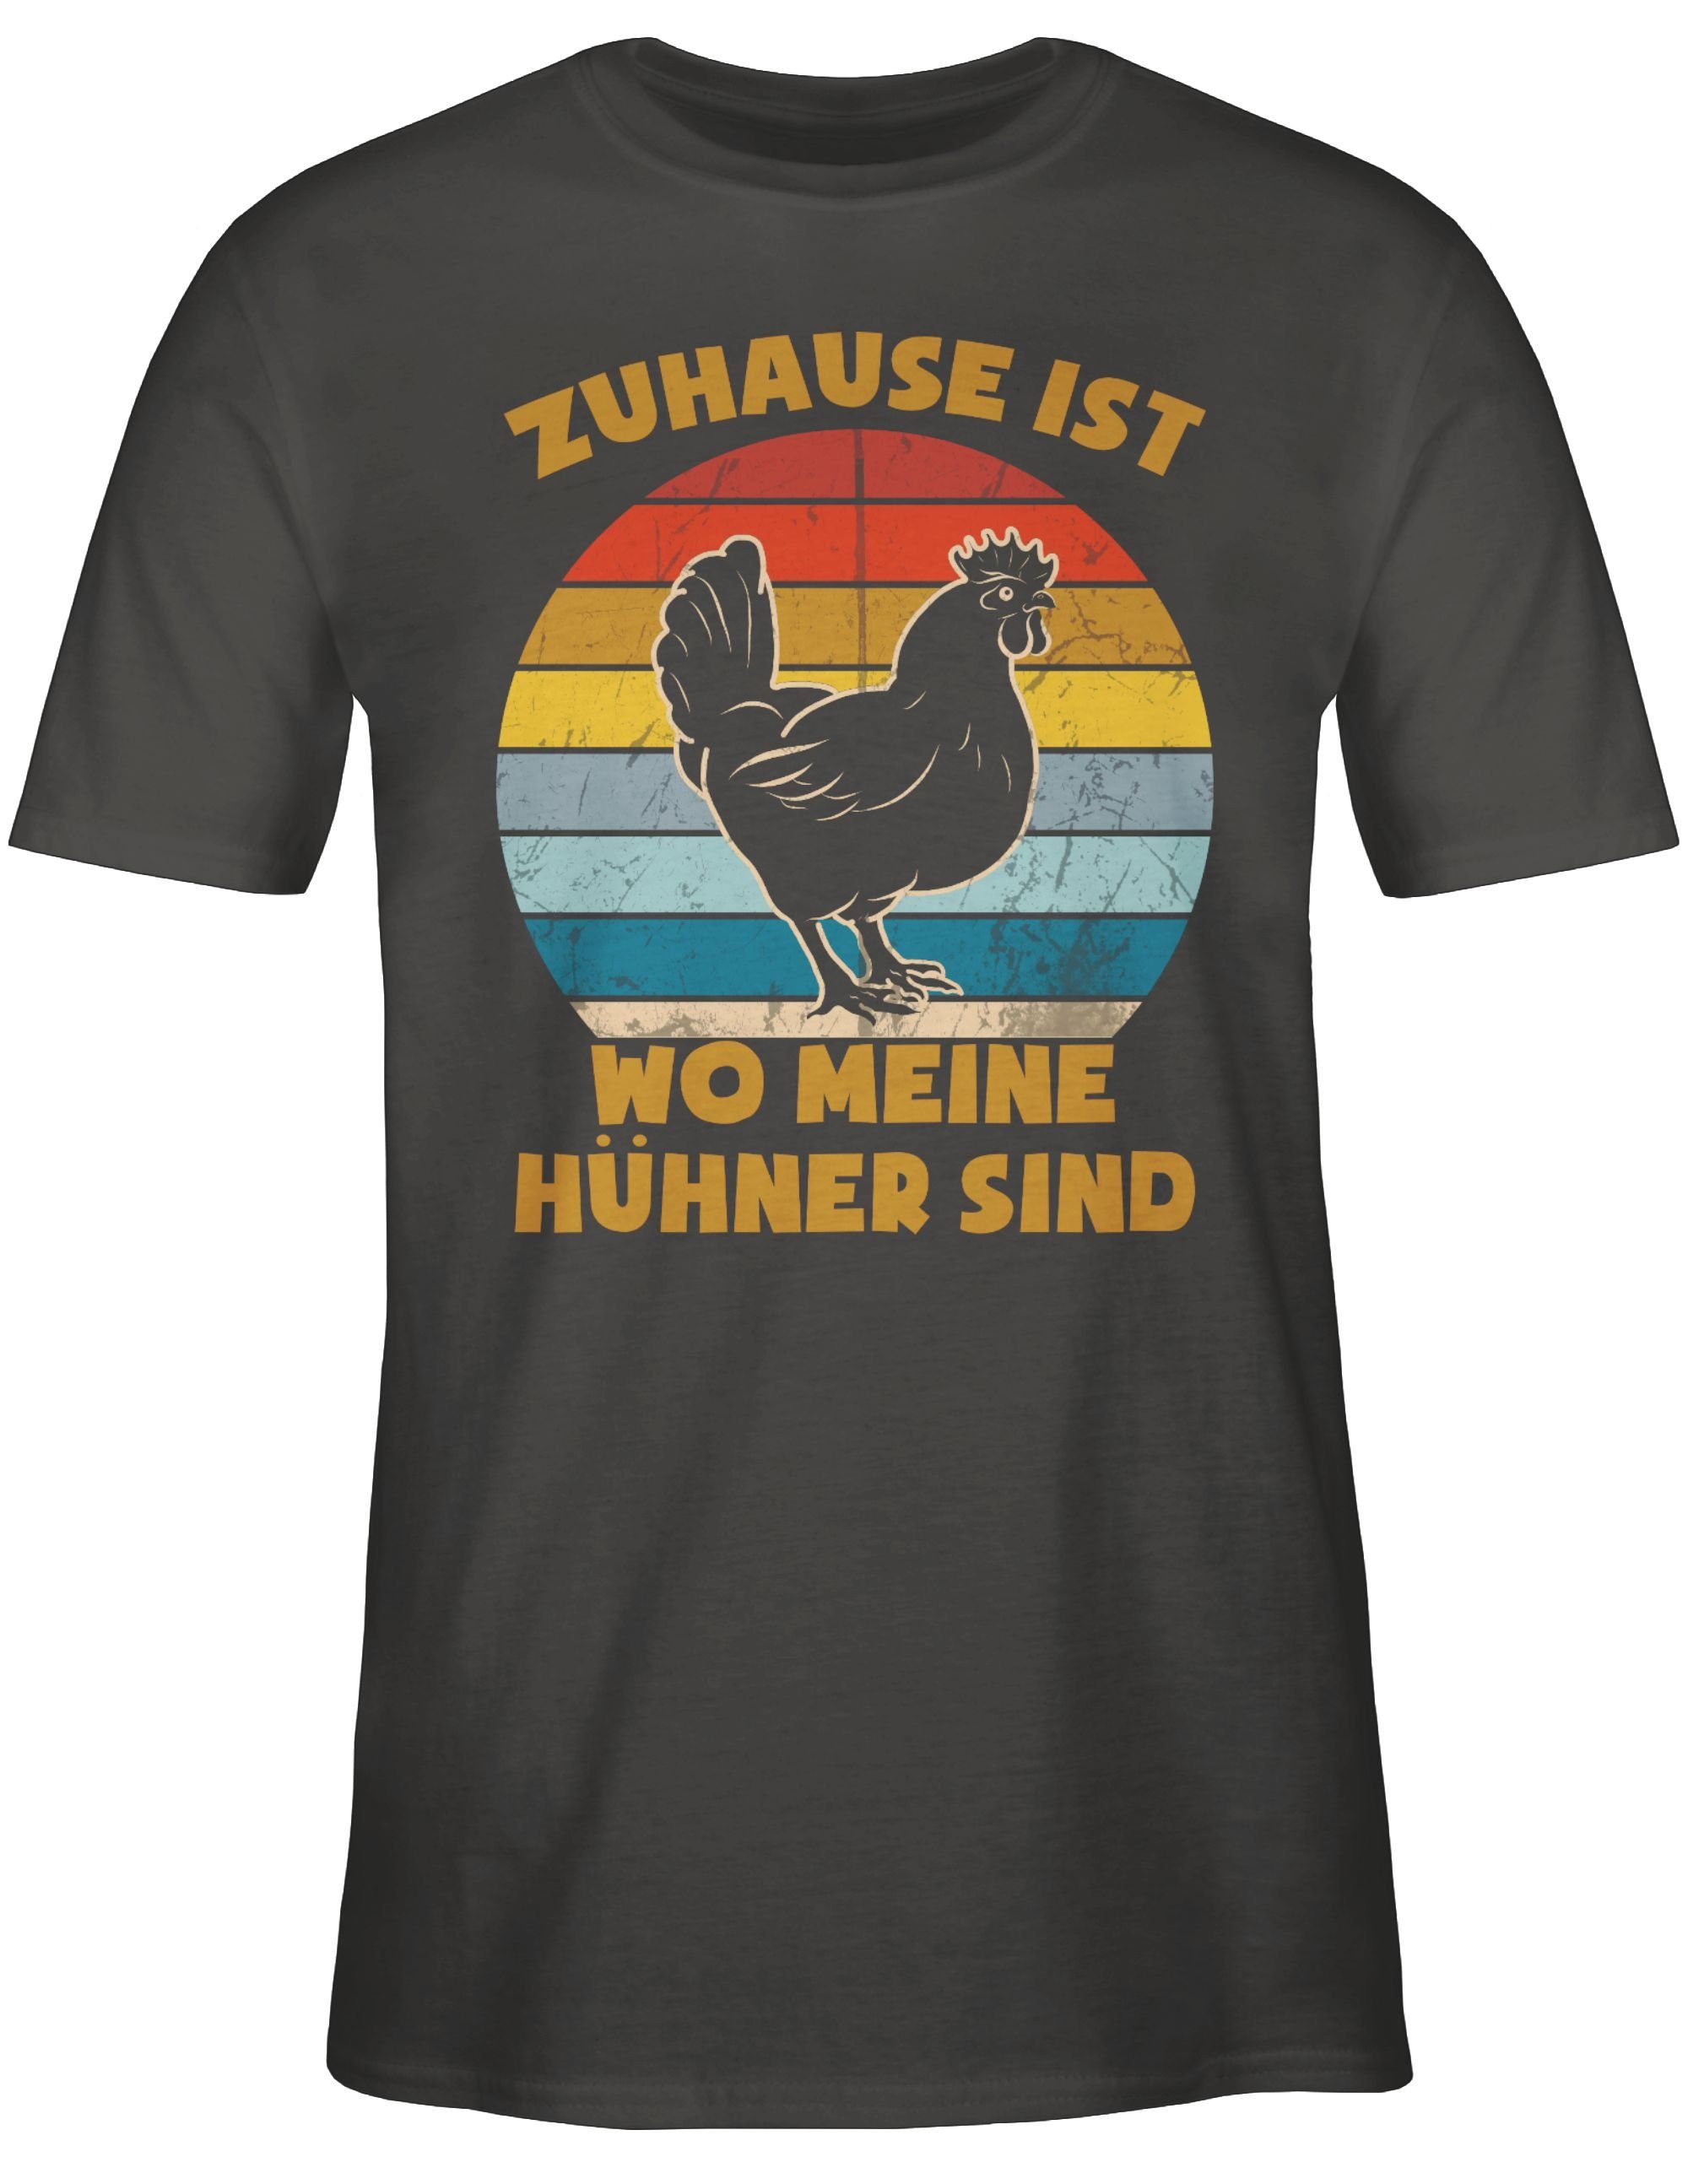 Shirtracer T-Shirt ist Vintage - meine wo Dunkelgrau Sprüche Zuhause Hühner 02 mit Spruch sind Statement